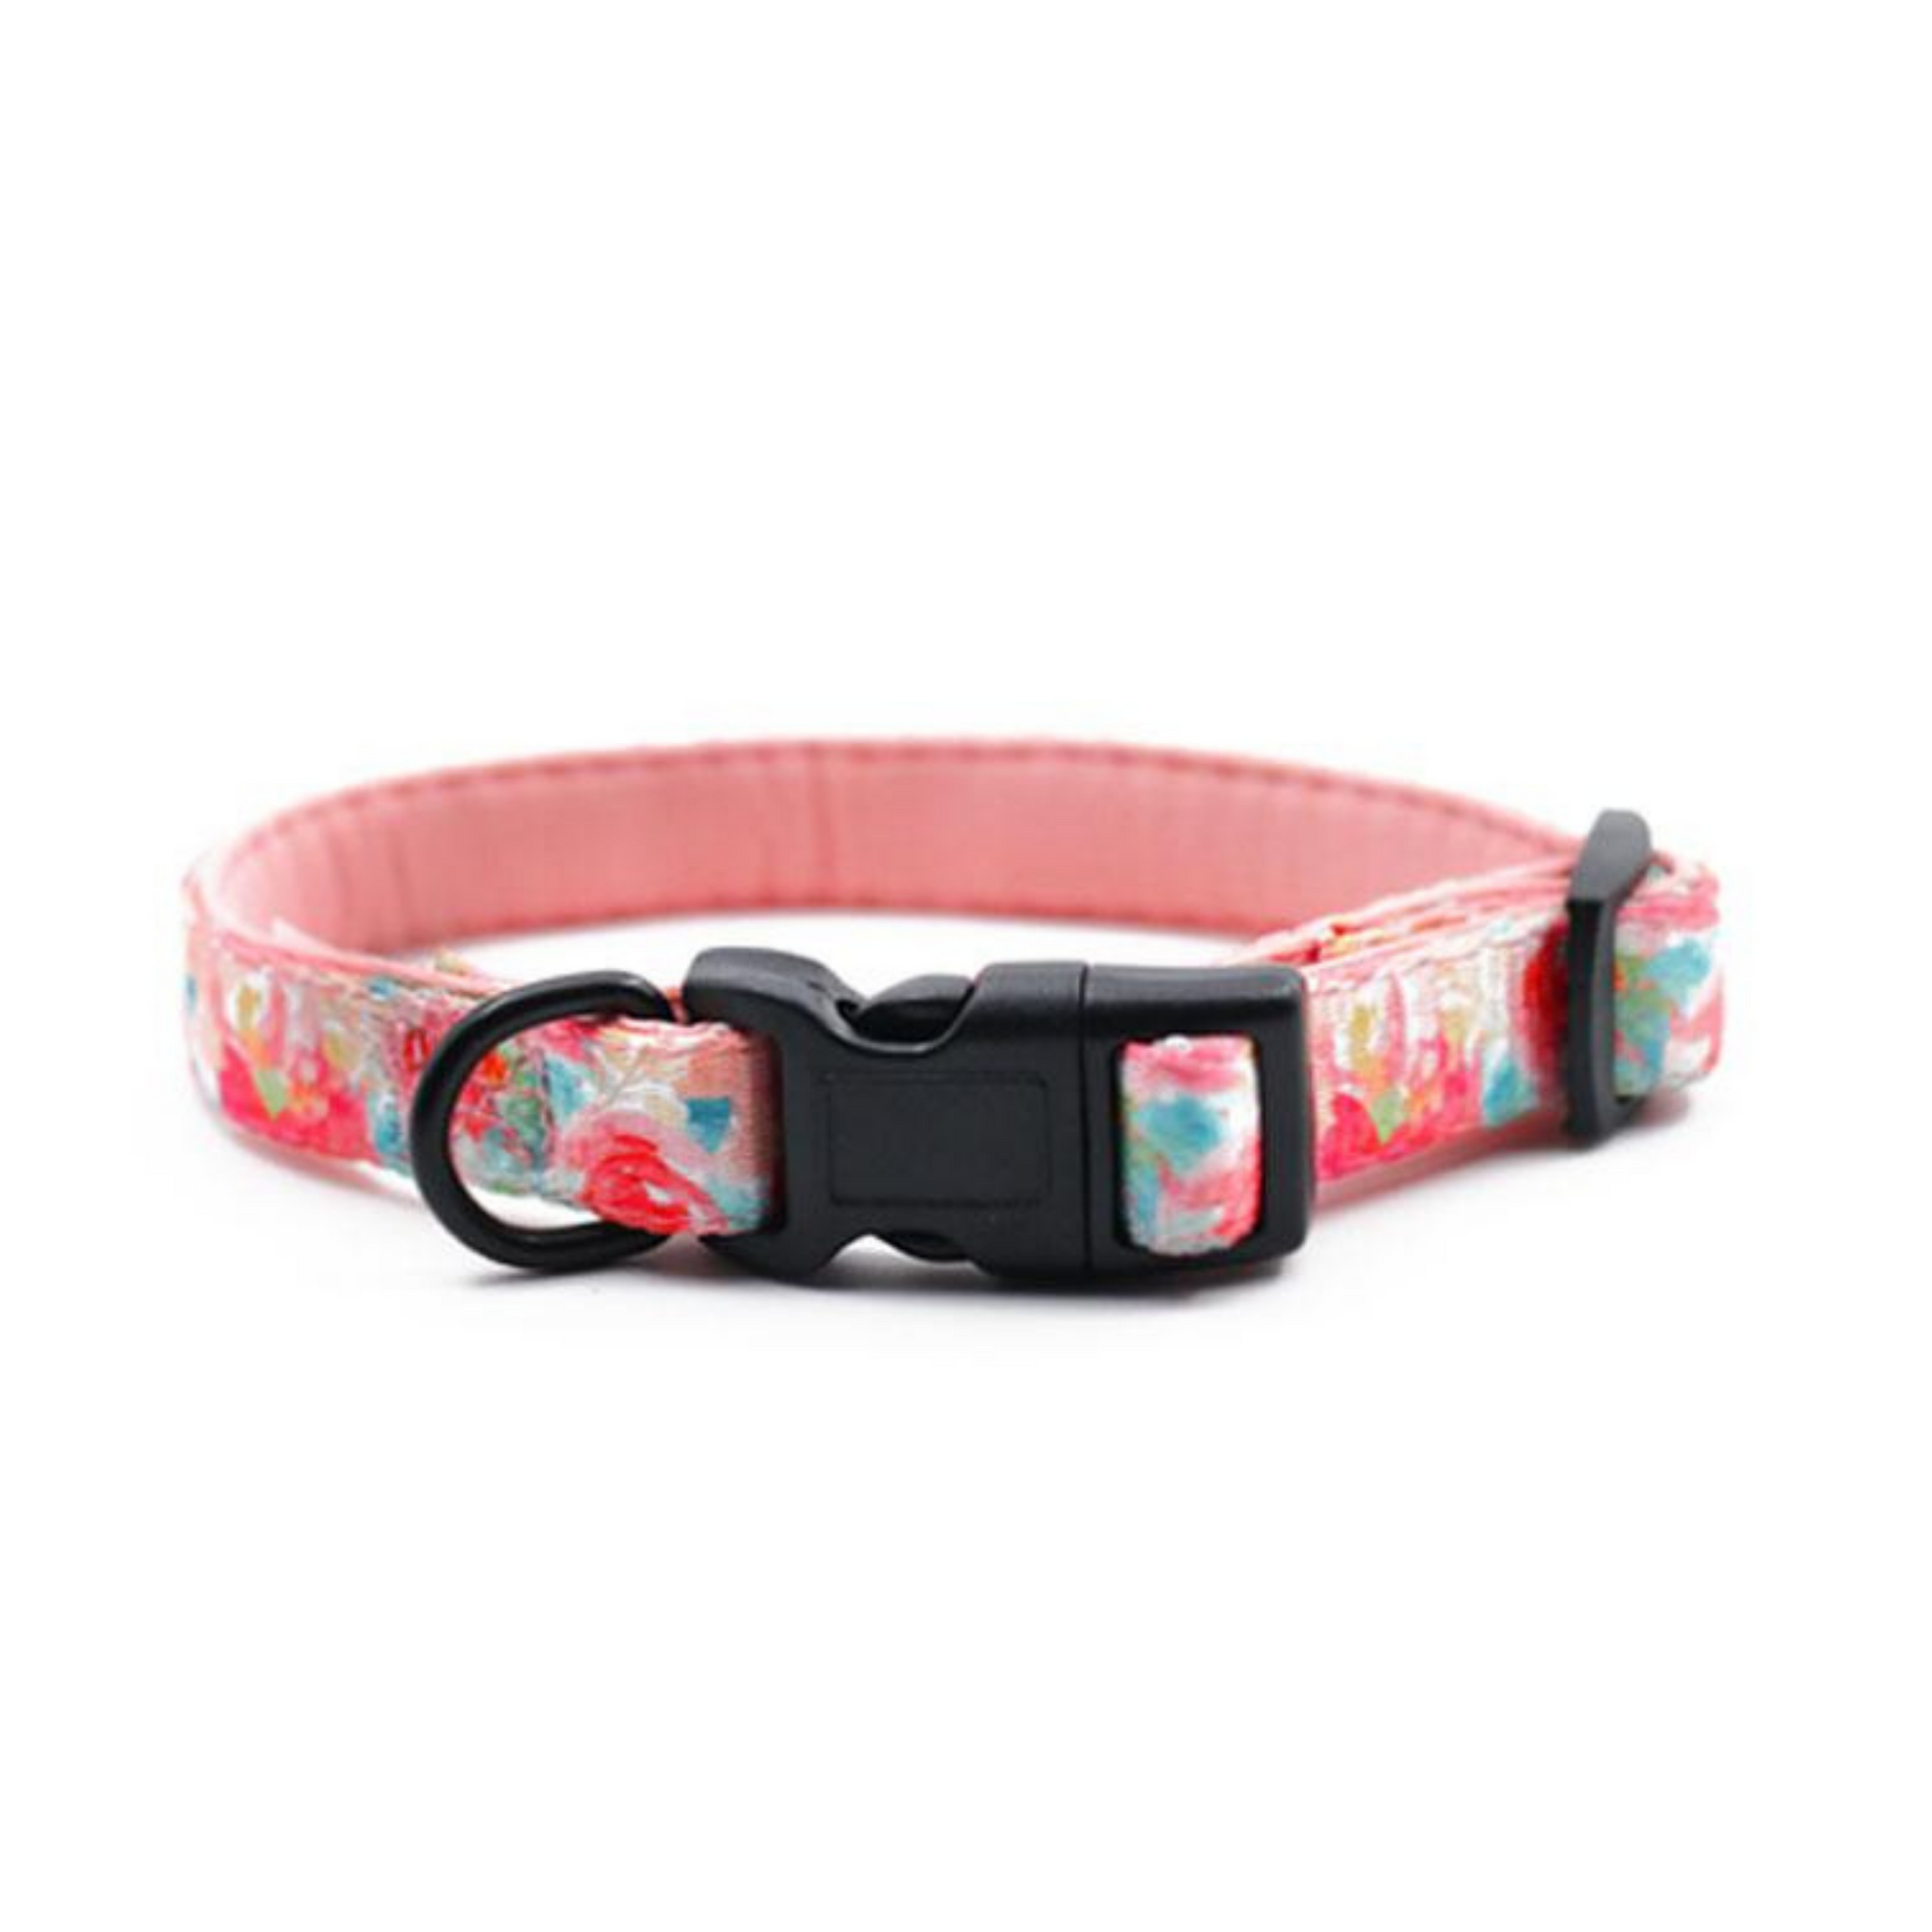 Soft Dog Collar with pink flowers - Von Hound and Friends